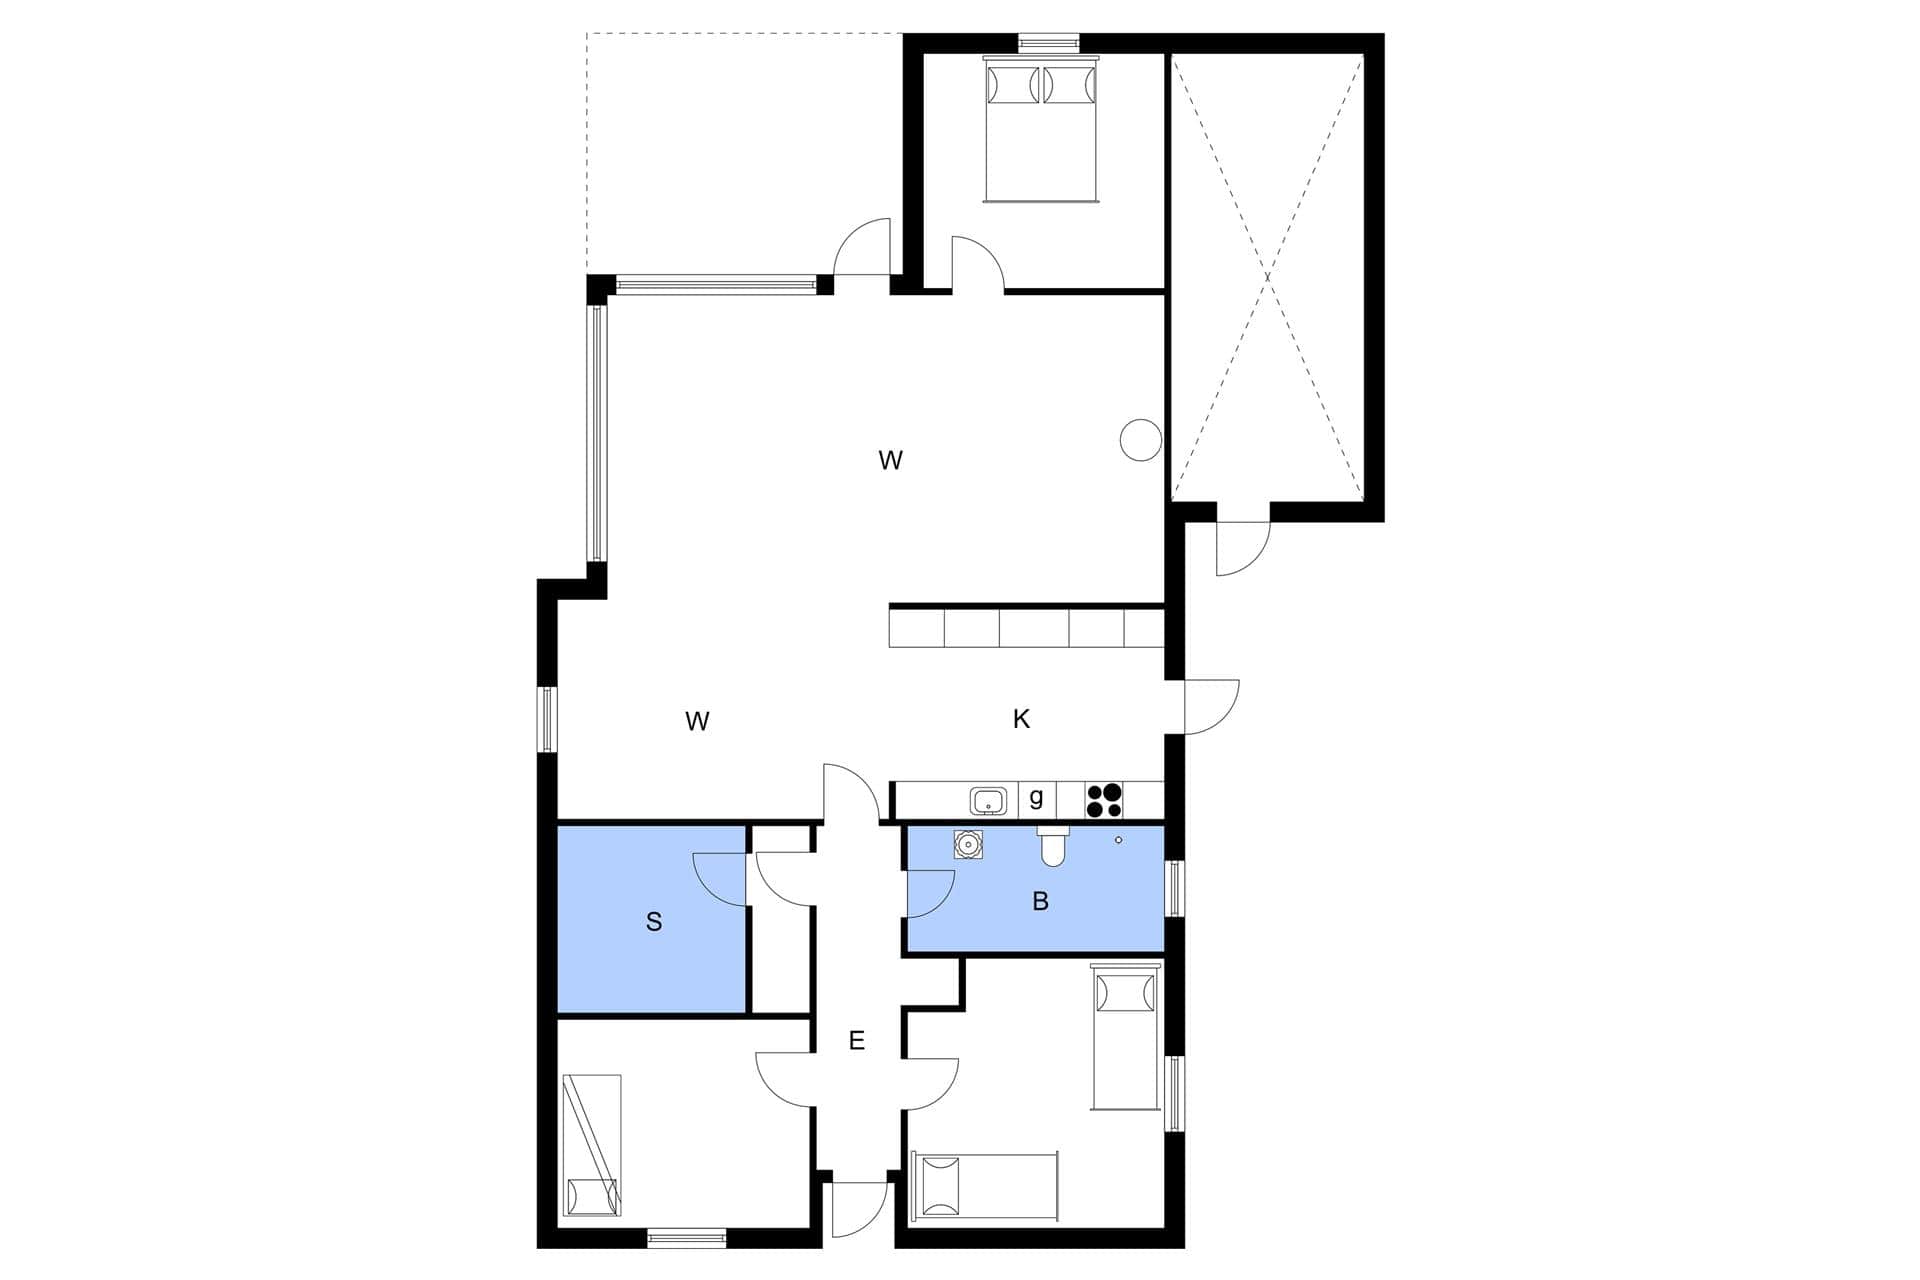 Interior 11-3 Holiday-home M64218, Siriusvej 30, DK - 5500 Middelfart